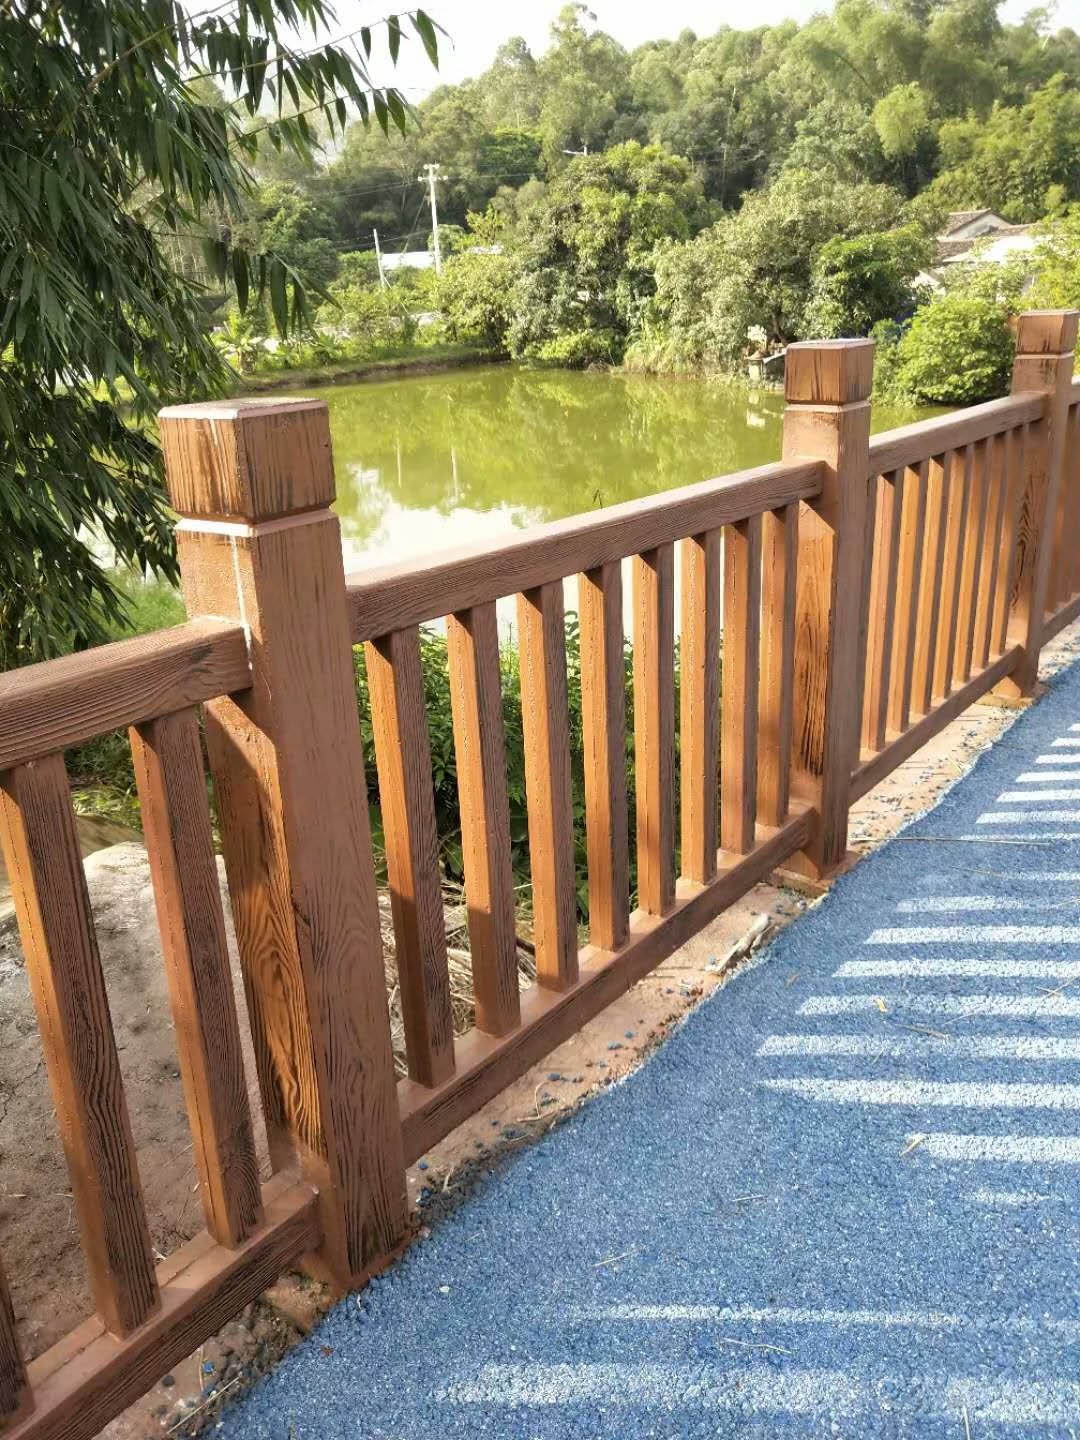 江西仿石栏杆新农村景区建设点有:南昌市政河岸河提景观仿木护栏,九江